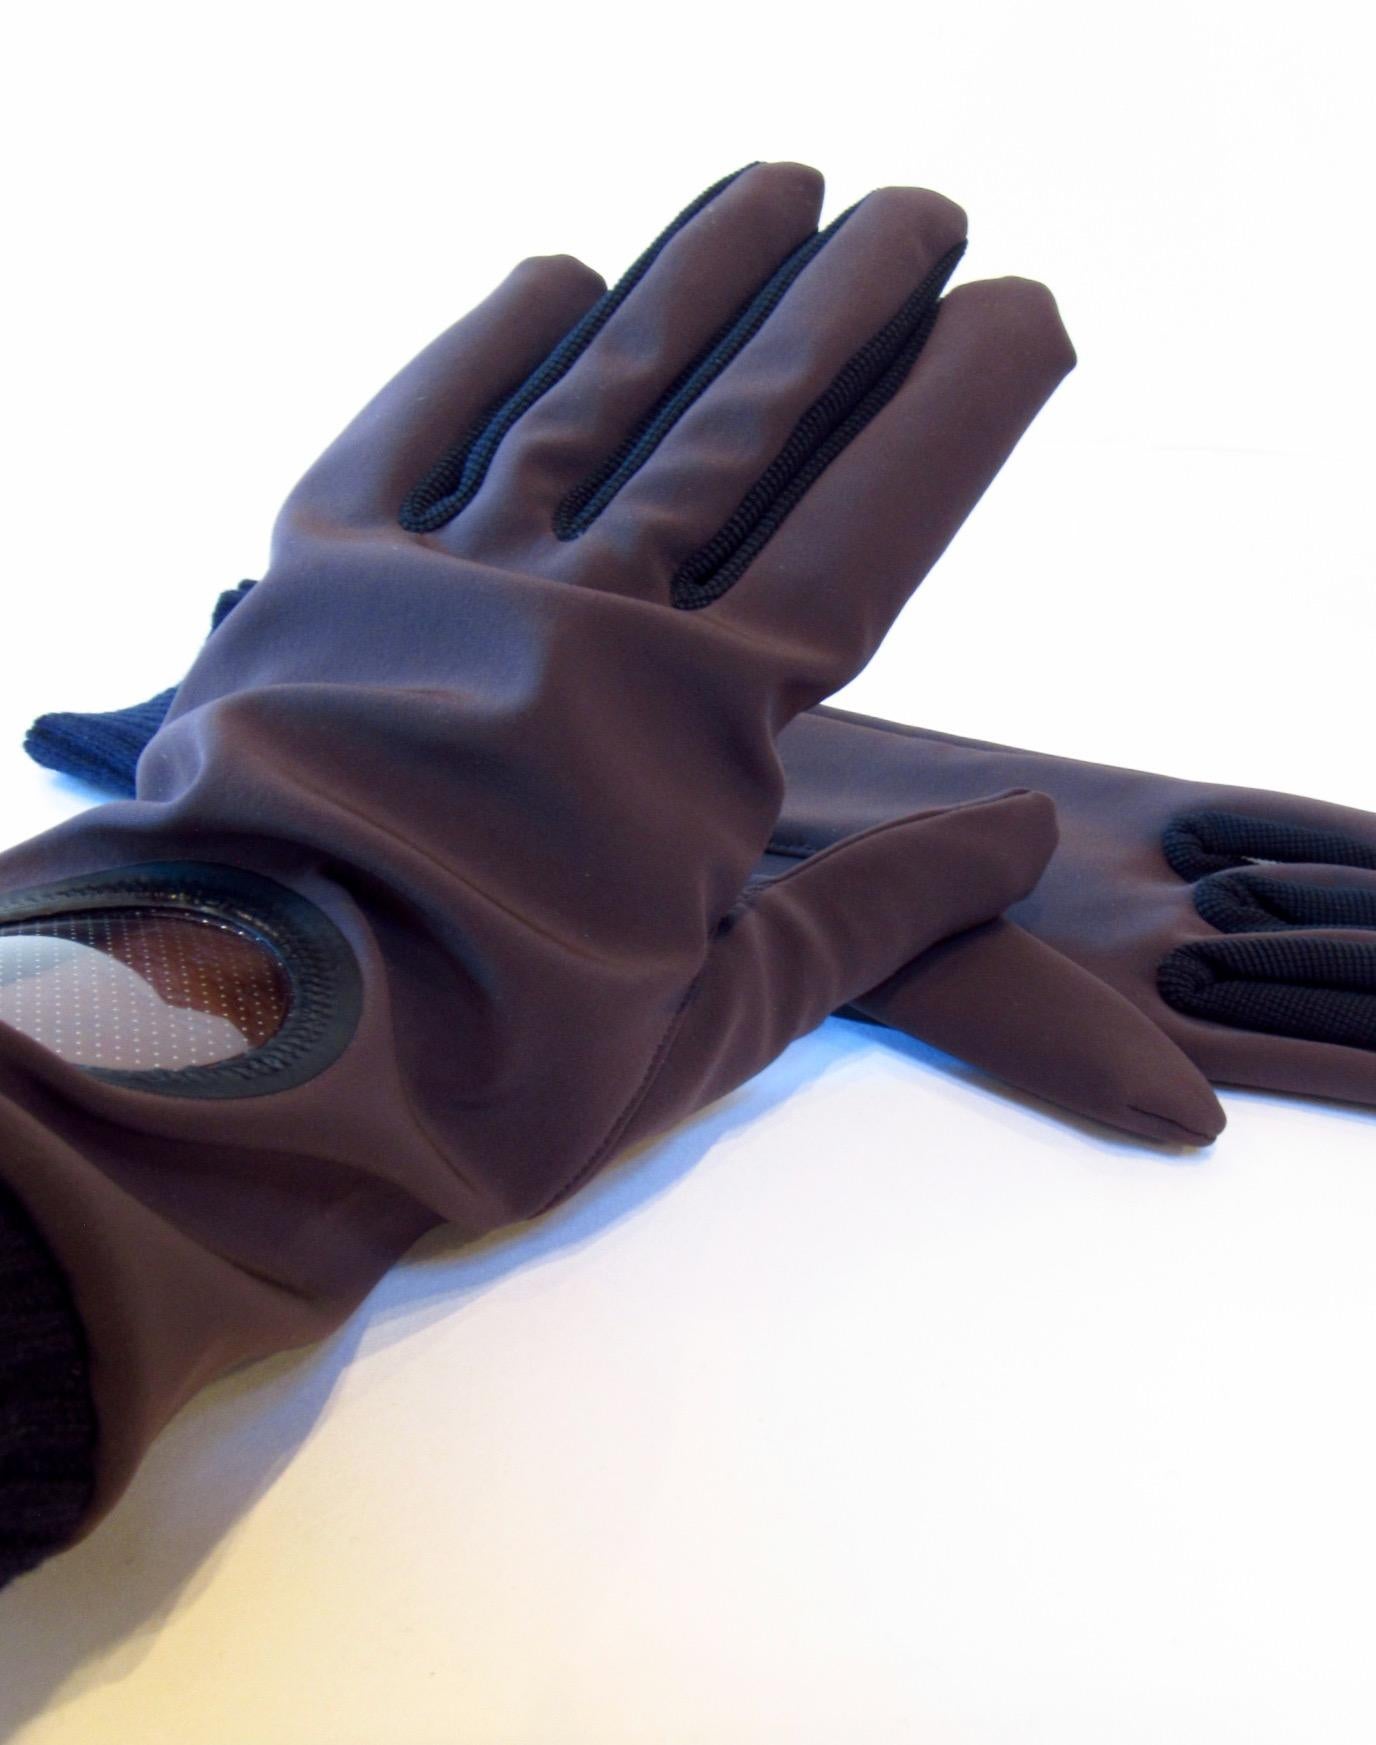 Vintage Undercover dunkelbraune Handschuhe aus Nylon und Polyurethan mit Bullaugenfenster am linken Handgelenk. Das Braun wird durch schwarze Wollbündchen und Details zwischen den Fingern ausgeglichen.